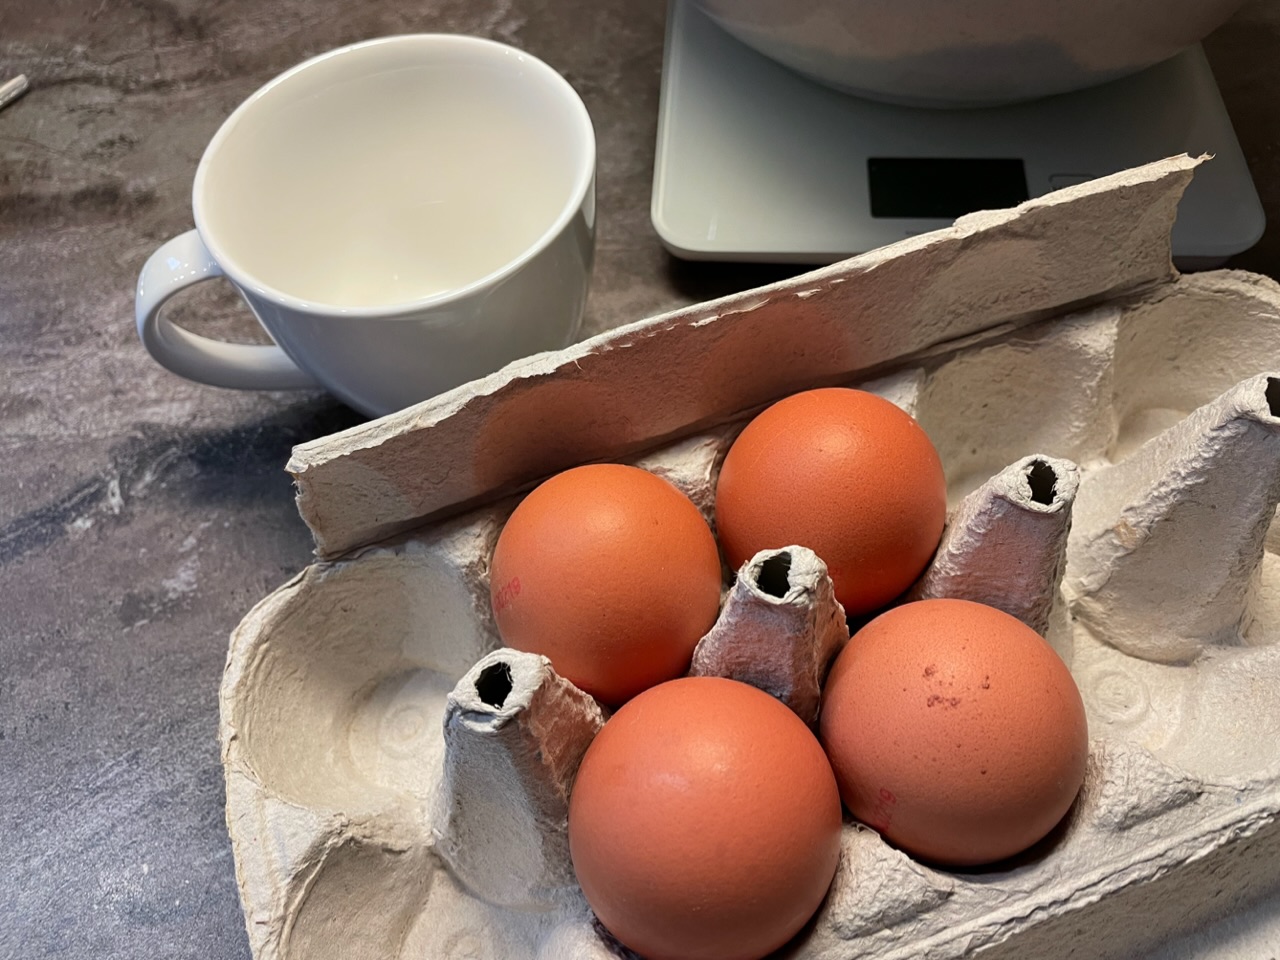 Bild zum Schritt 7 für das Bastel- und DIY-Abenteuer für Kinder: 'Stellt  die Eier und eine Tasse bereit.'